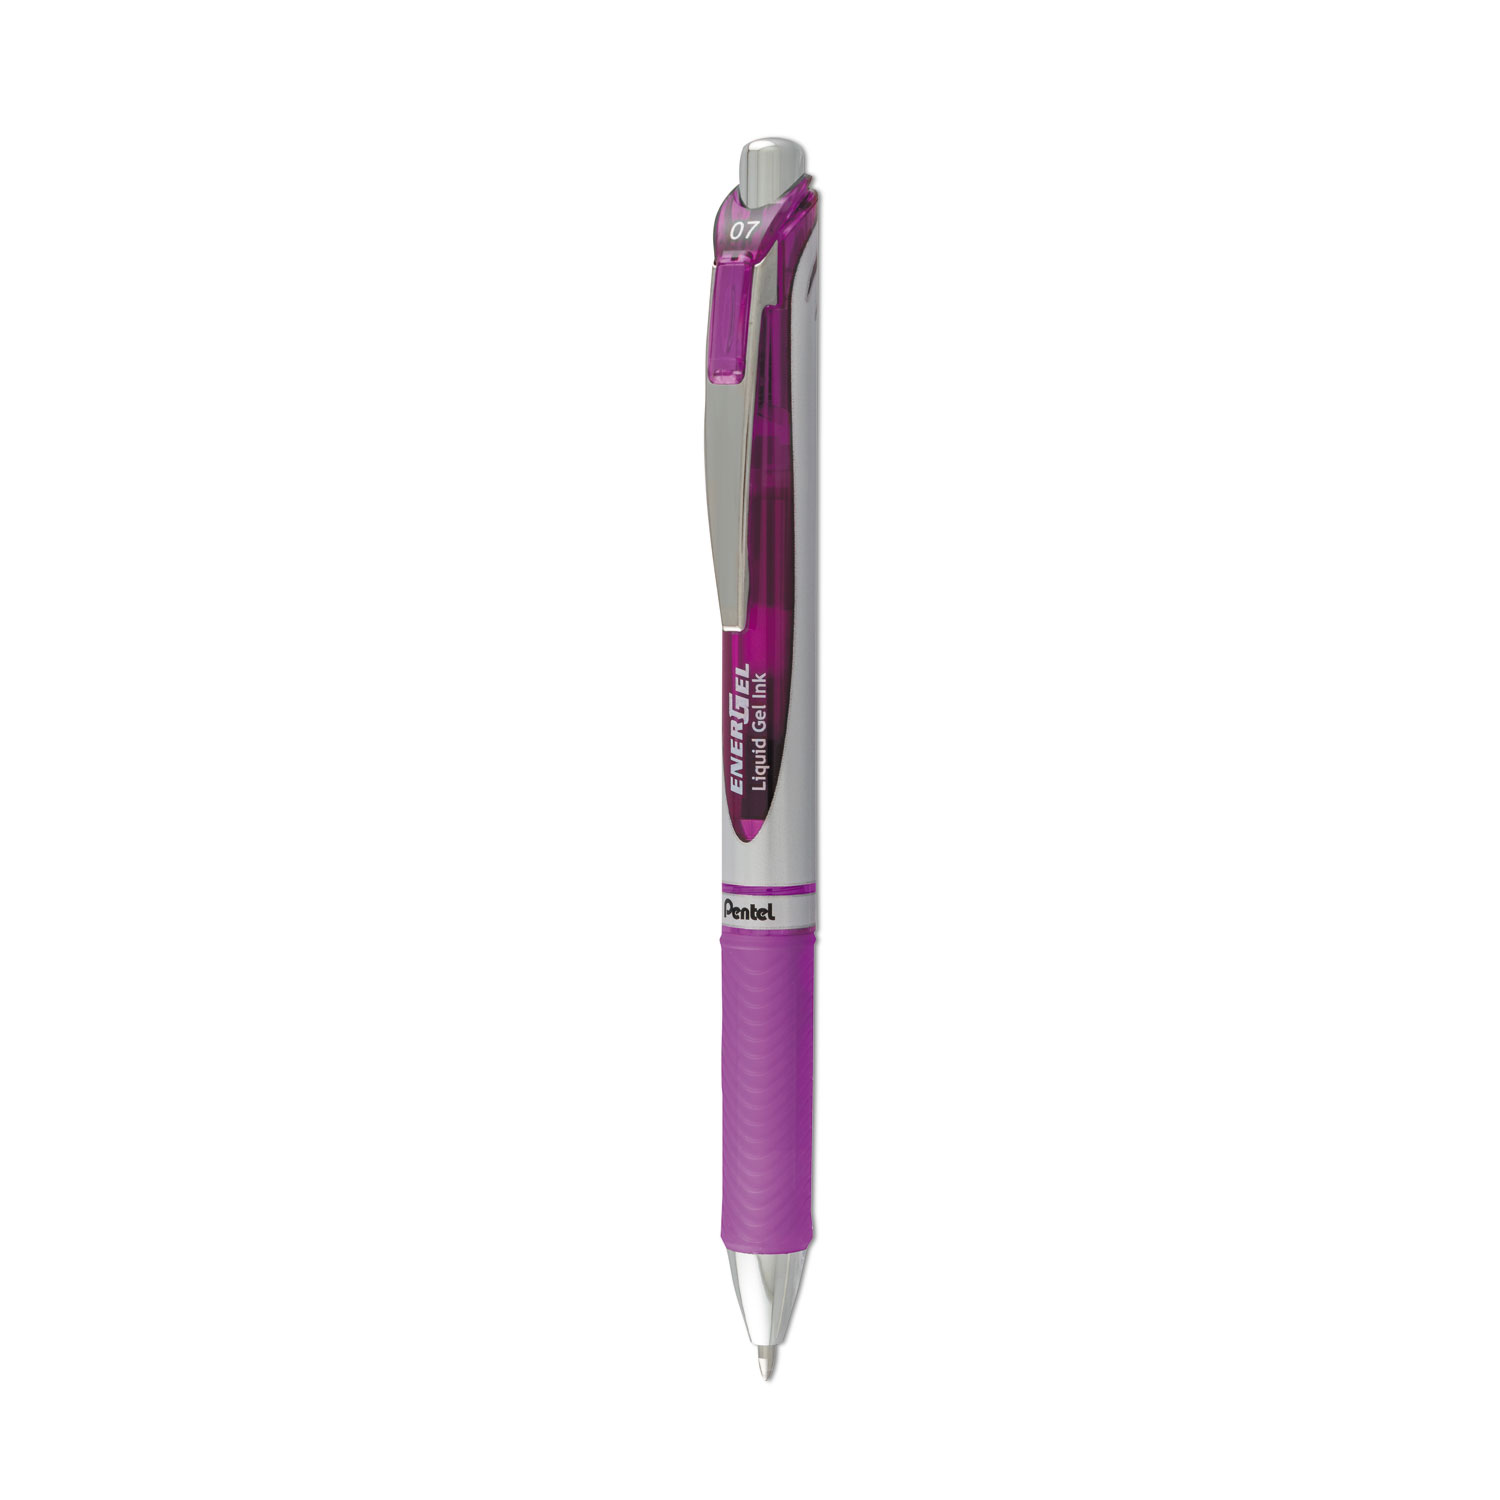  Pentel BL77-V EnerGel RTX Retractable Gel Pen, Medium 0.7mm, Violet Ink, Violet/Gray Barrel (PENBL77V) 